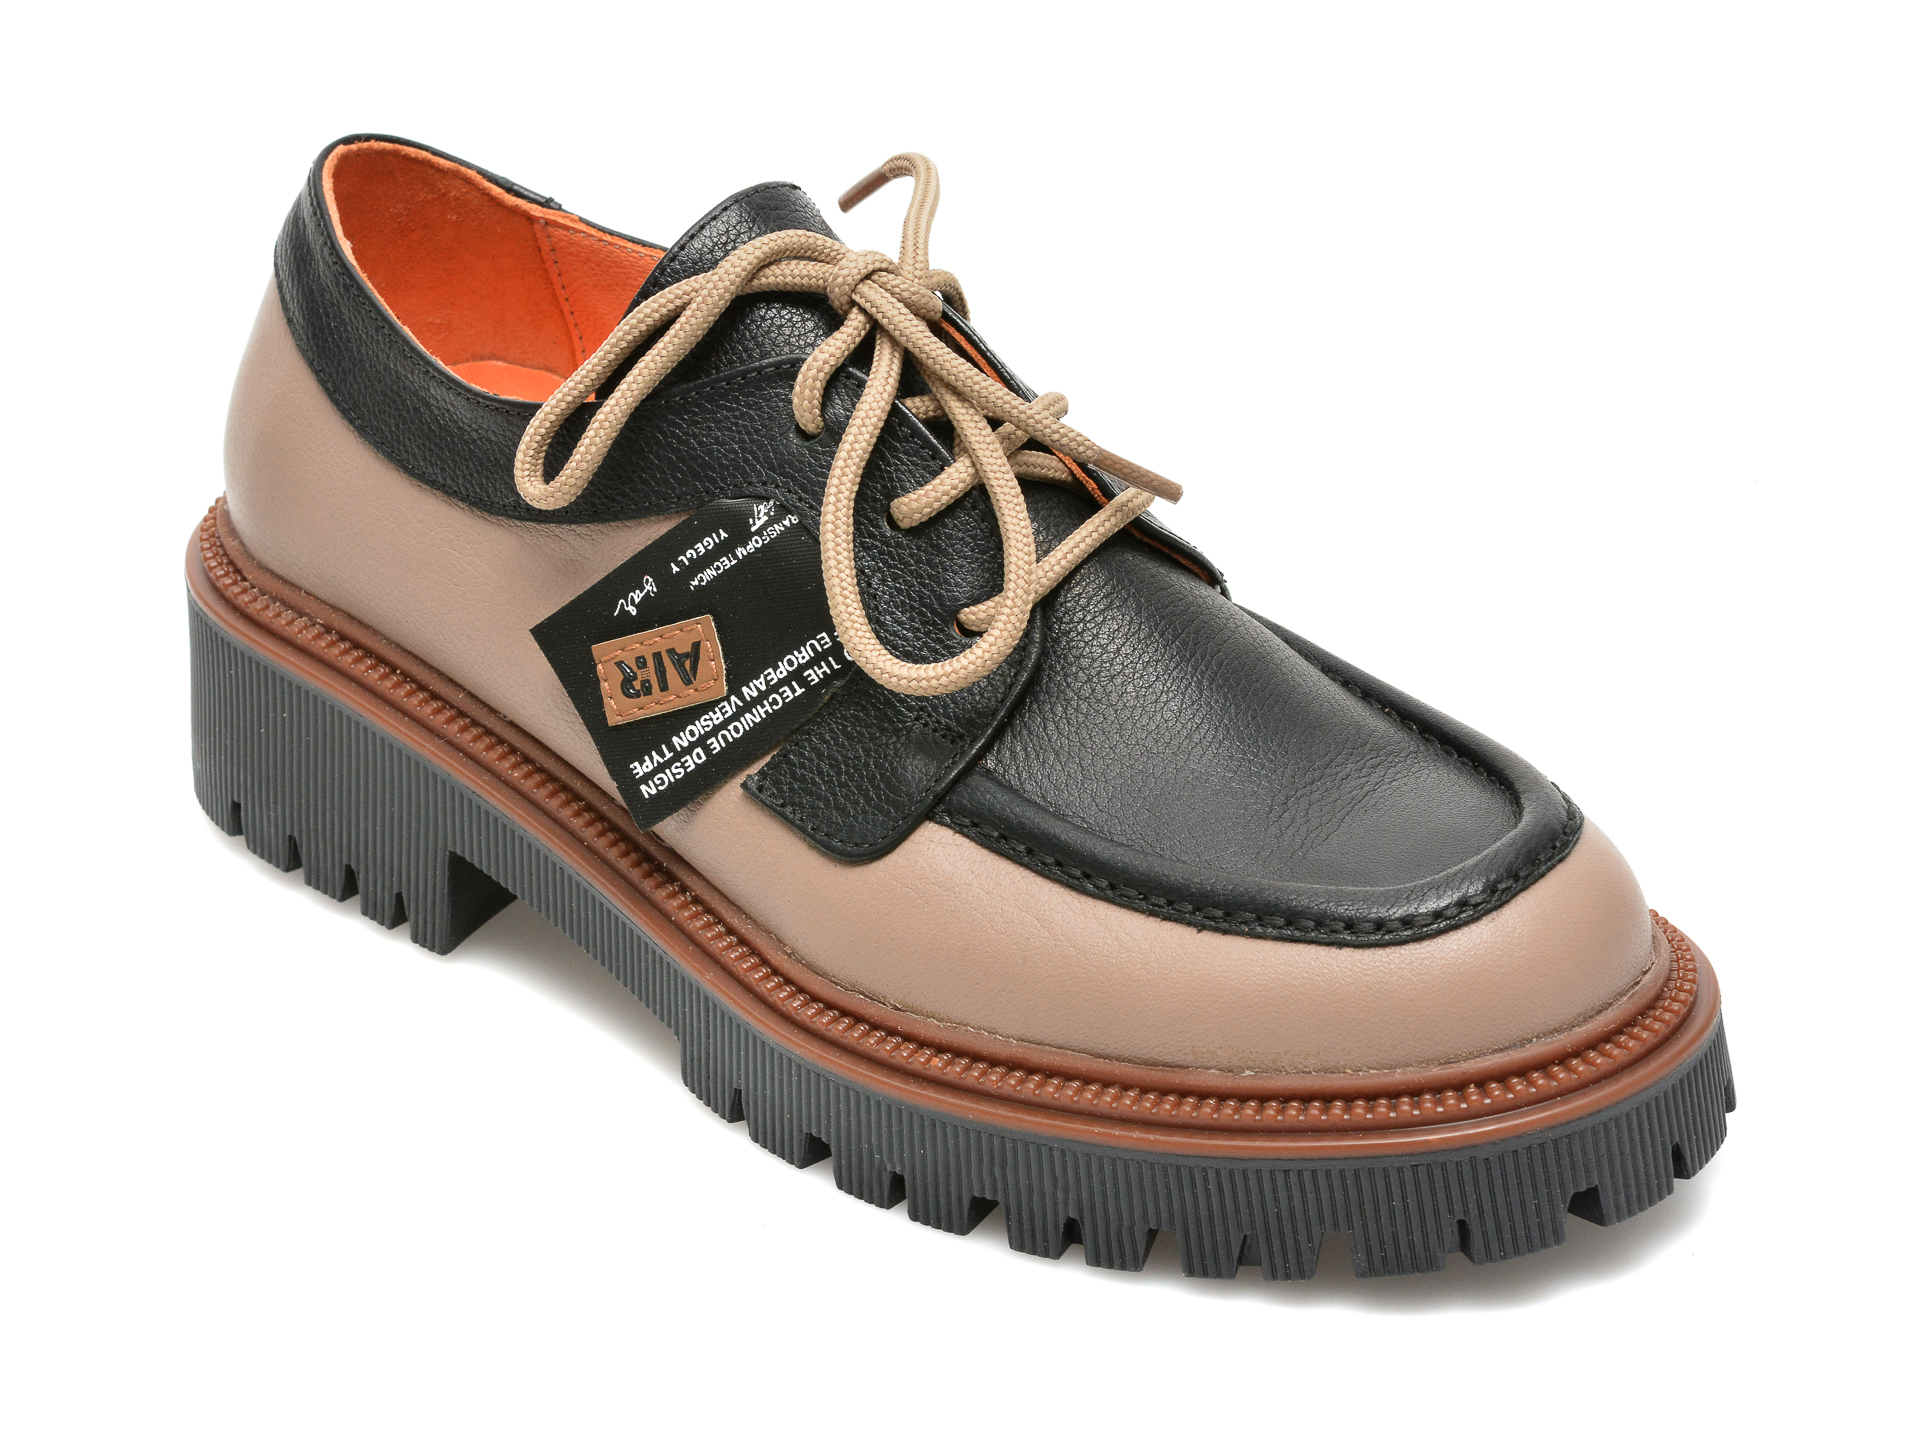 Pantofi FLAVIA PASSINI gri, 9074, din piele naturala Flavia Passini